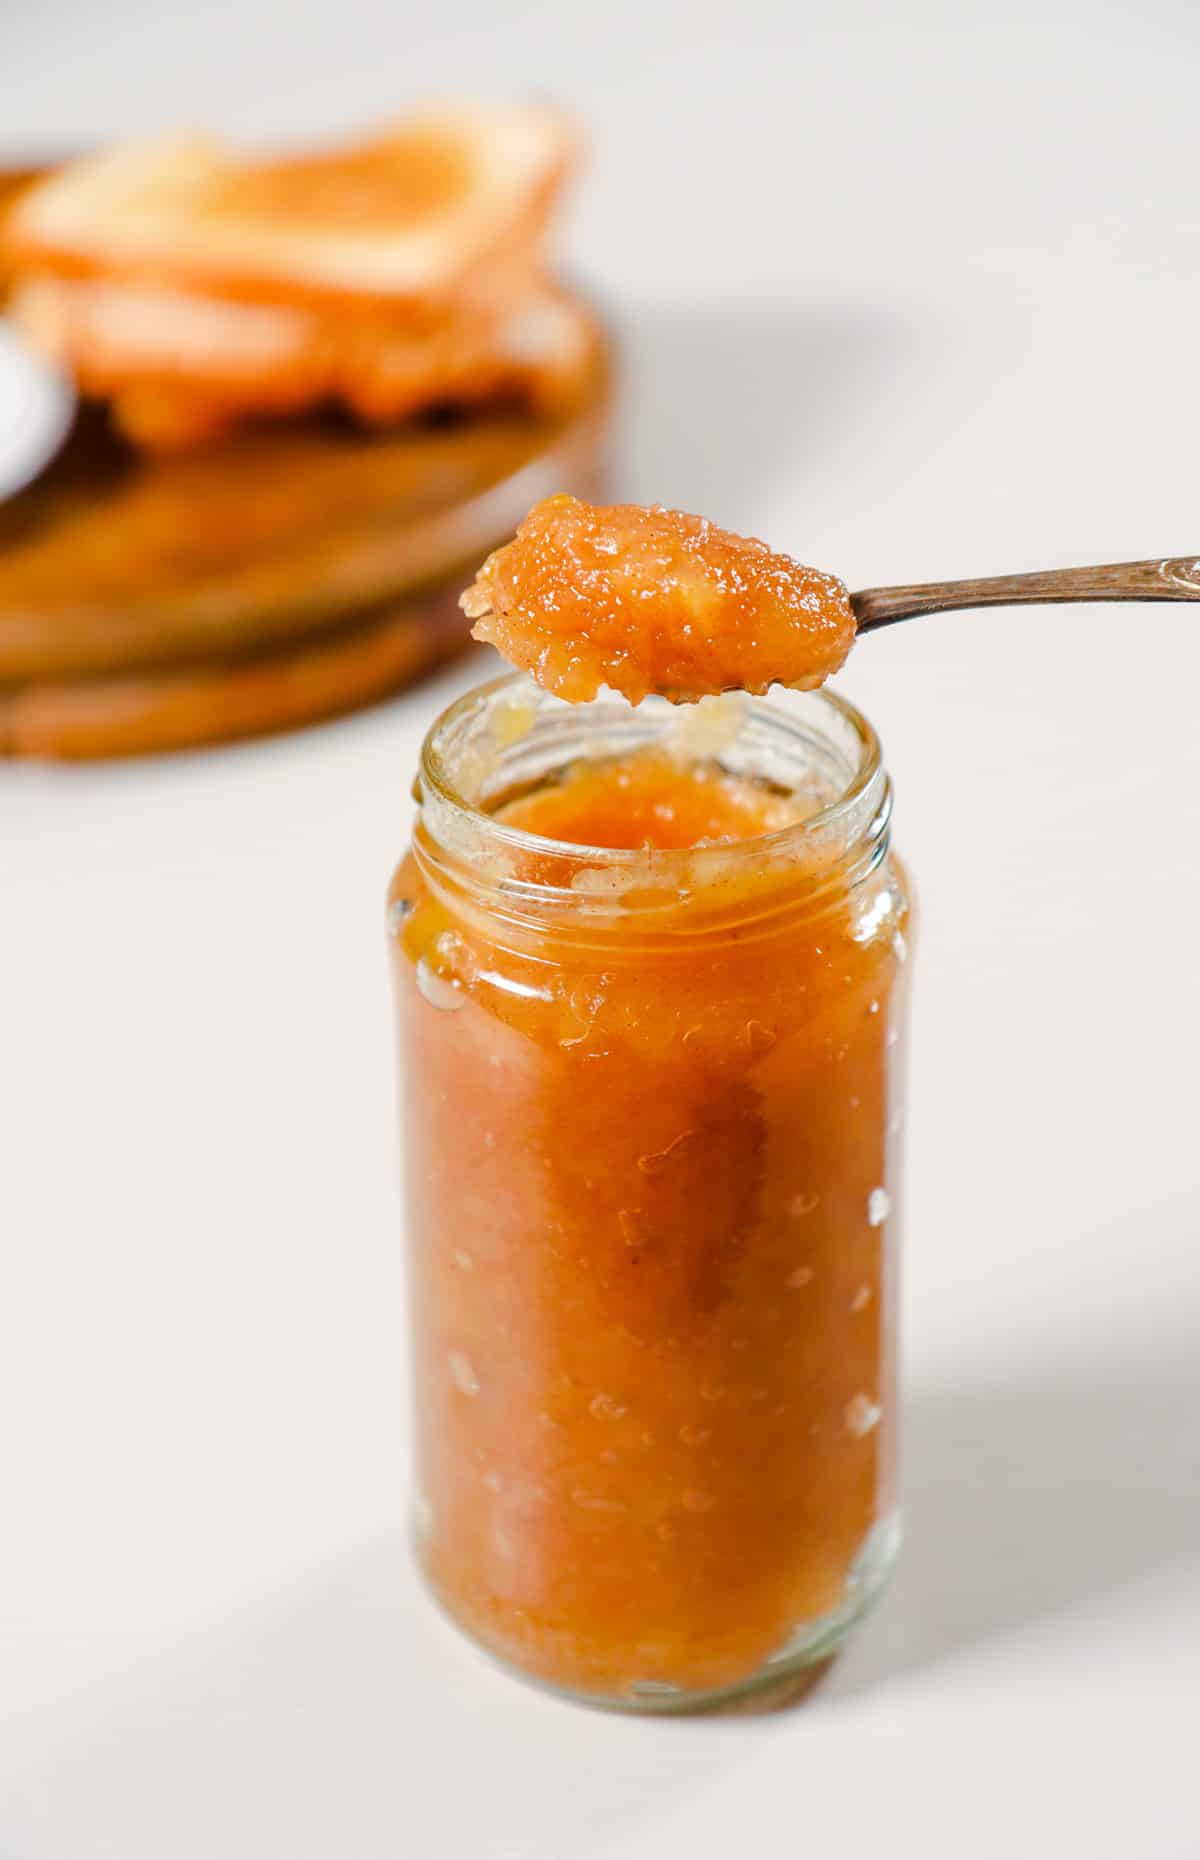 Spoon full of jam on the jar of Pear ginger jam.